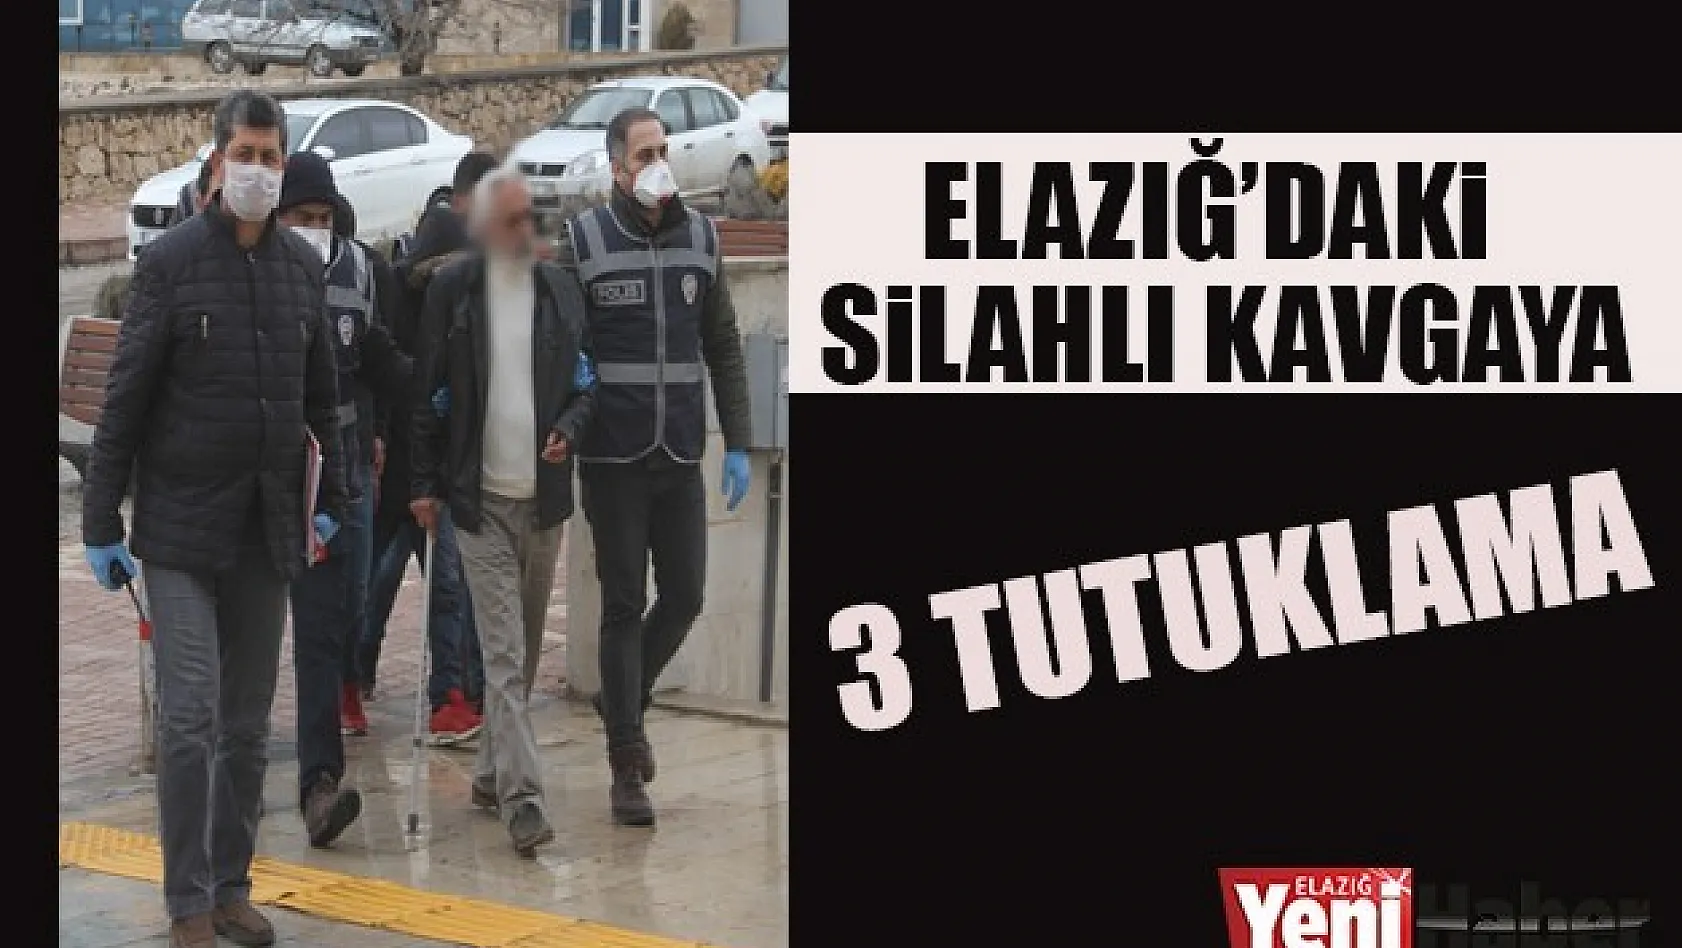 Elazığ'daki Silahlı Kavga: 3 Tutuklama